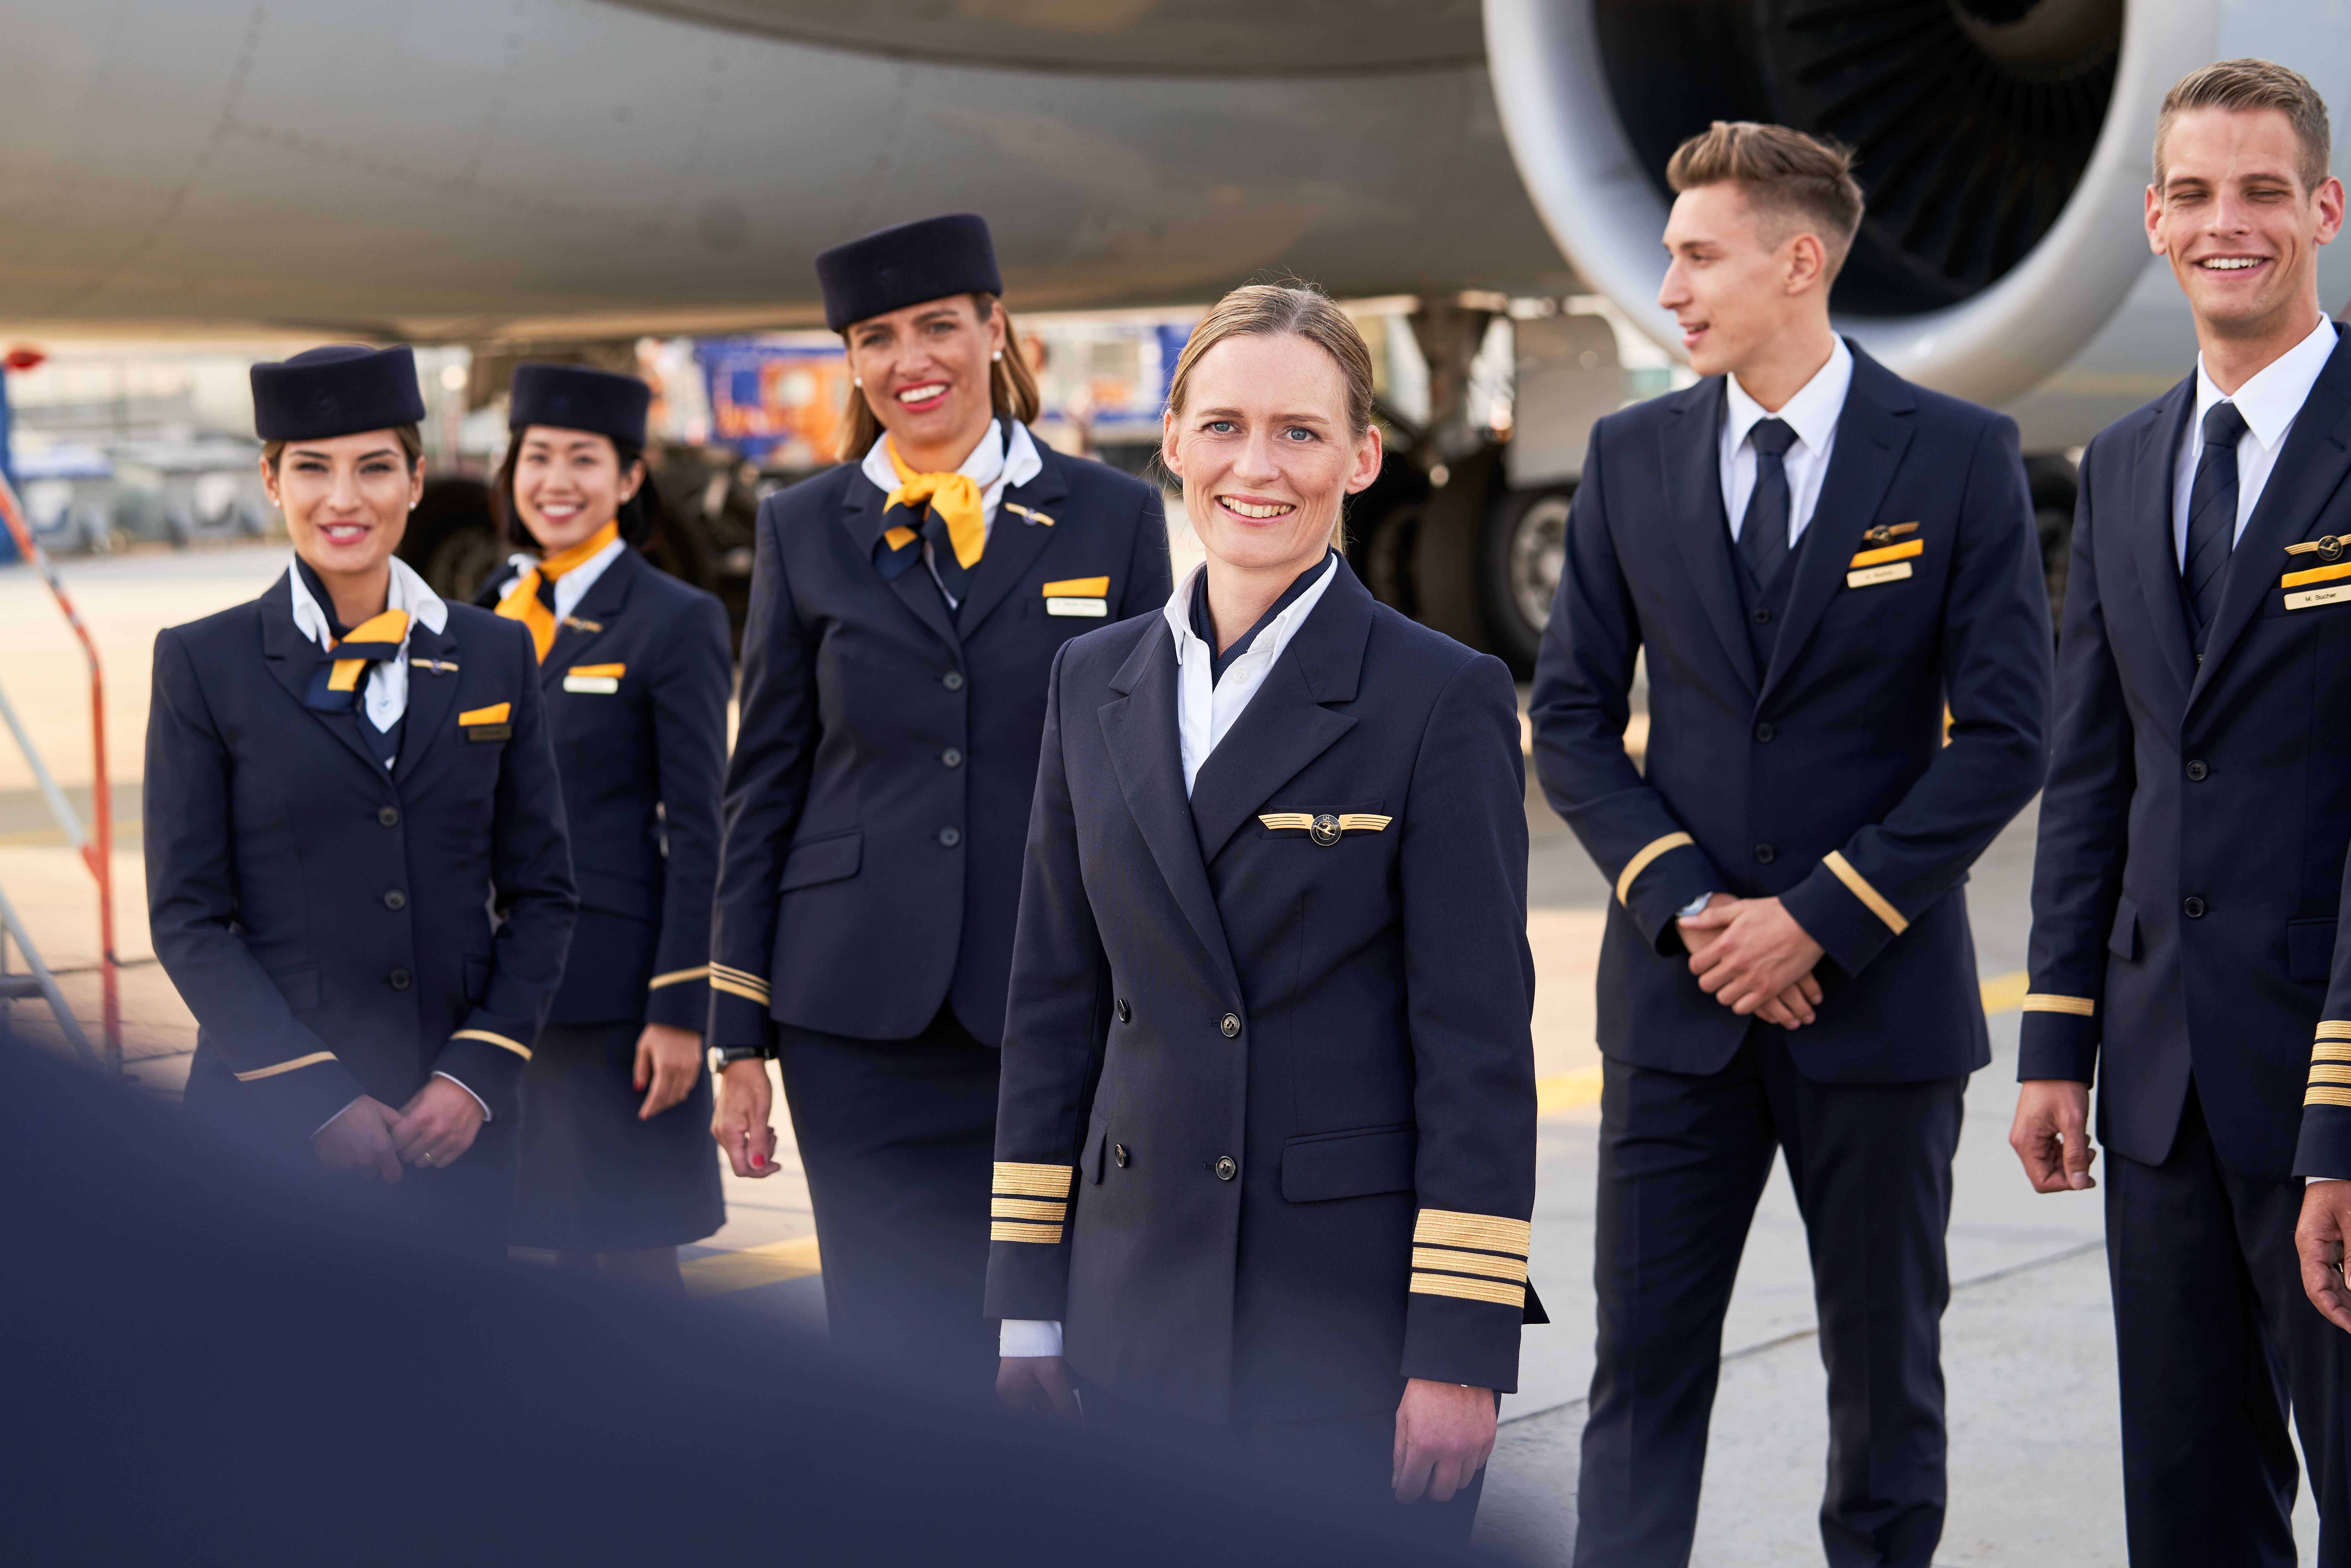 Lufthansa cabin crew